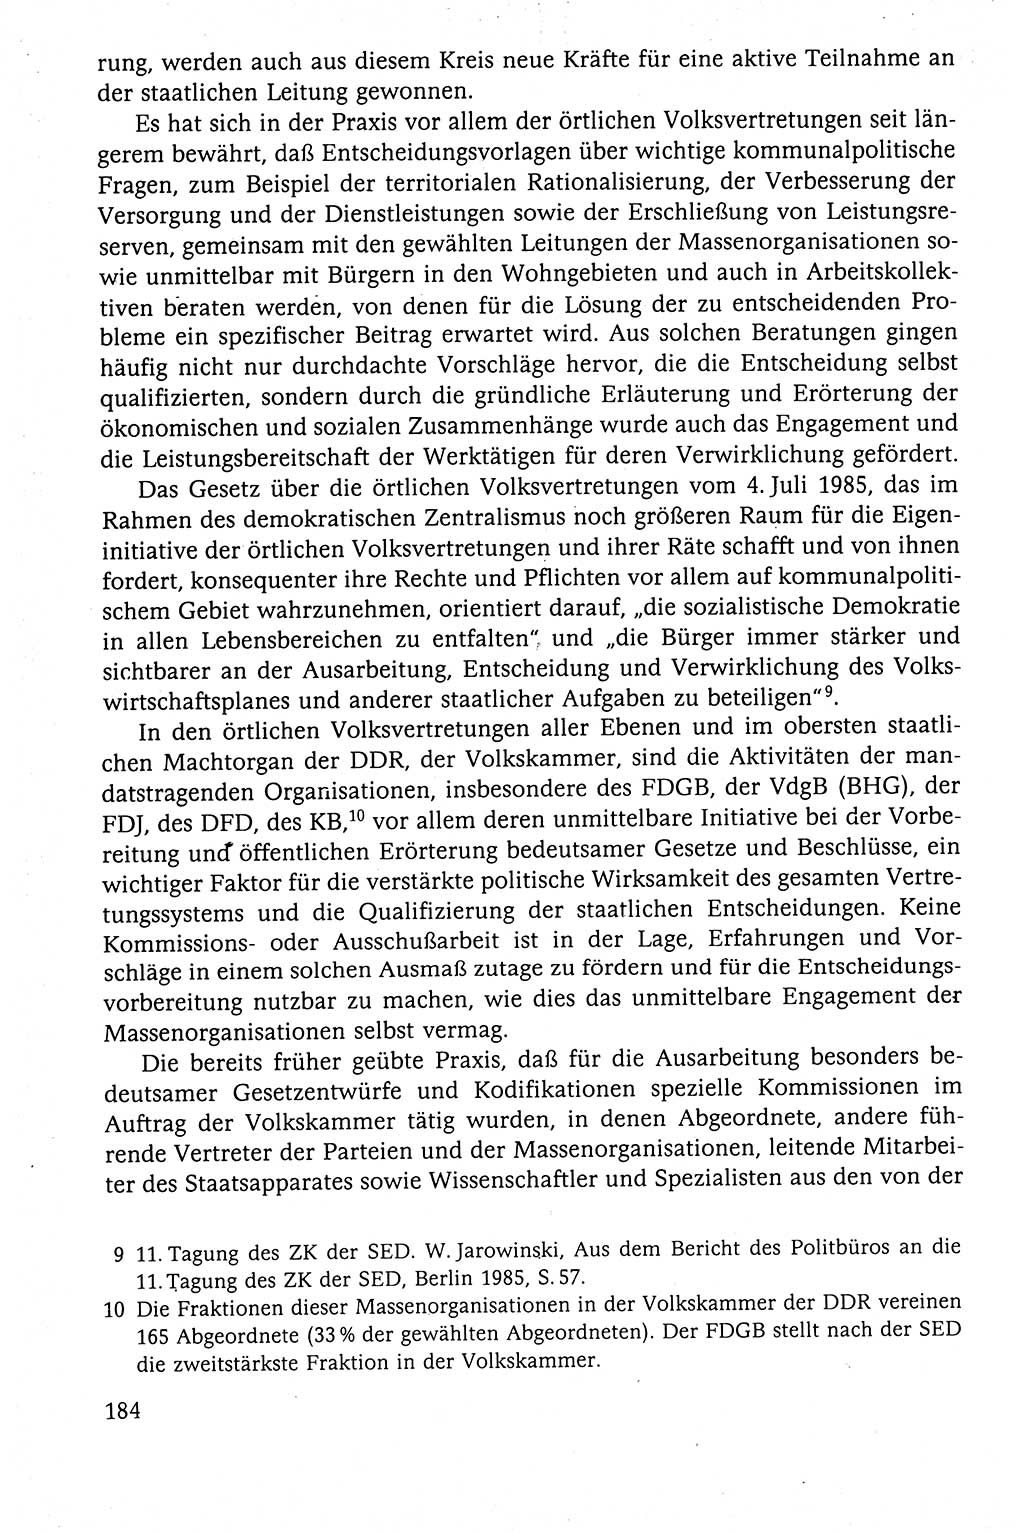 Der Staat im politischen System der DDR (Deutsche Demokratische Republik) 1986, Seite 184 (St. pol. Sys. DDR 1986, S. 184)